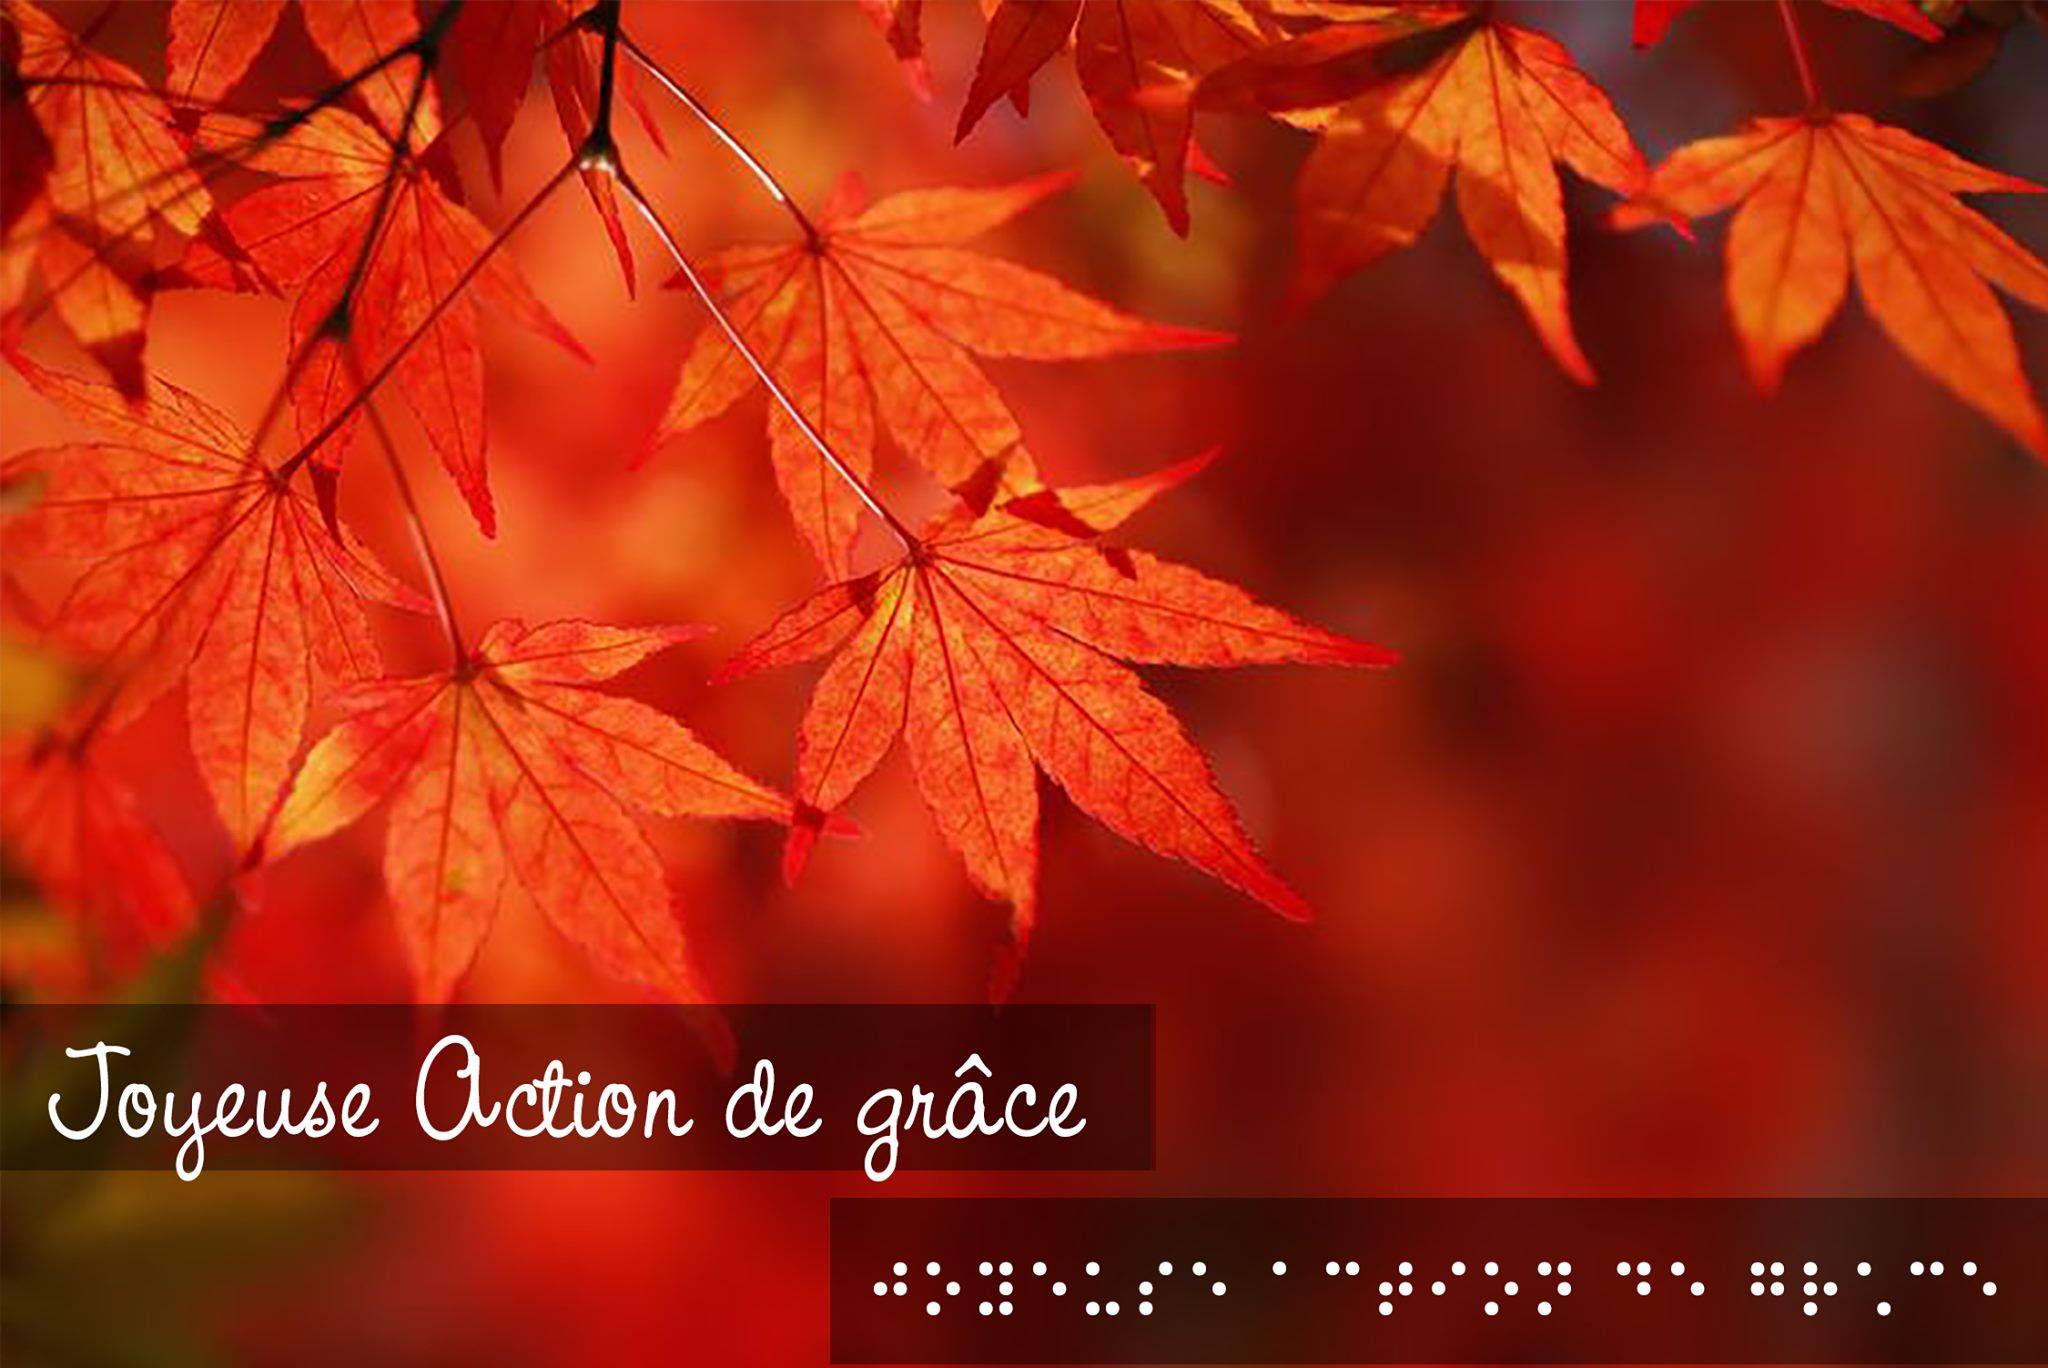 Des feuilles d’arbres orangées sont visibles dans la portion supérieure de l’image. Au bas de celle-ci, le texte « Joyeuse Action de grâce » est inscrit en braille et en lettres attachées.